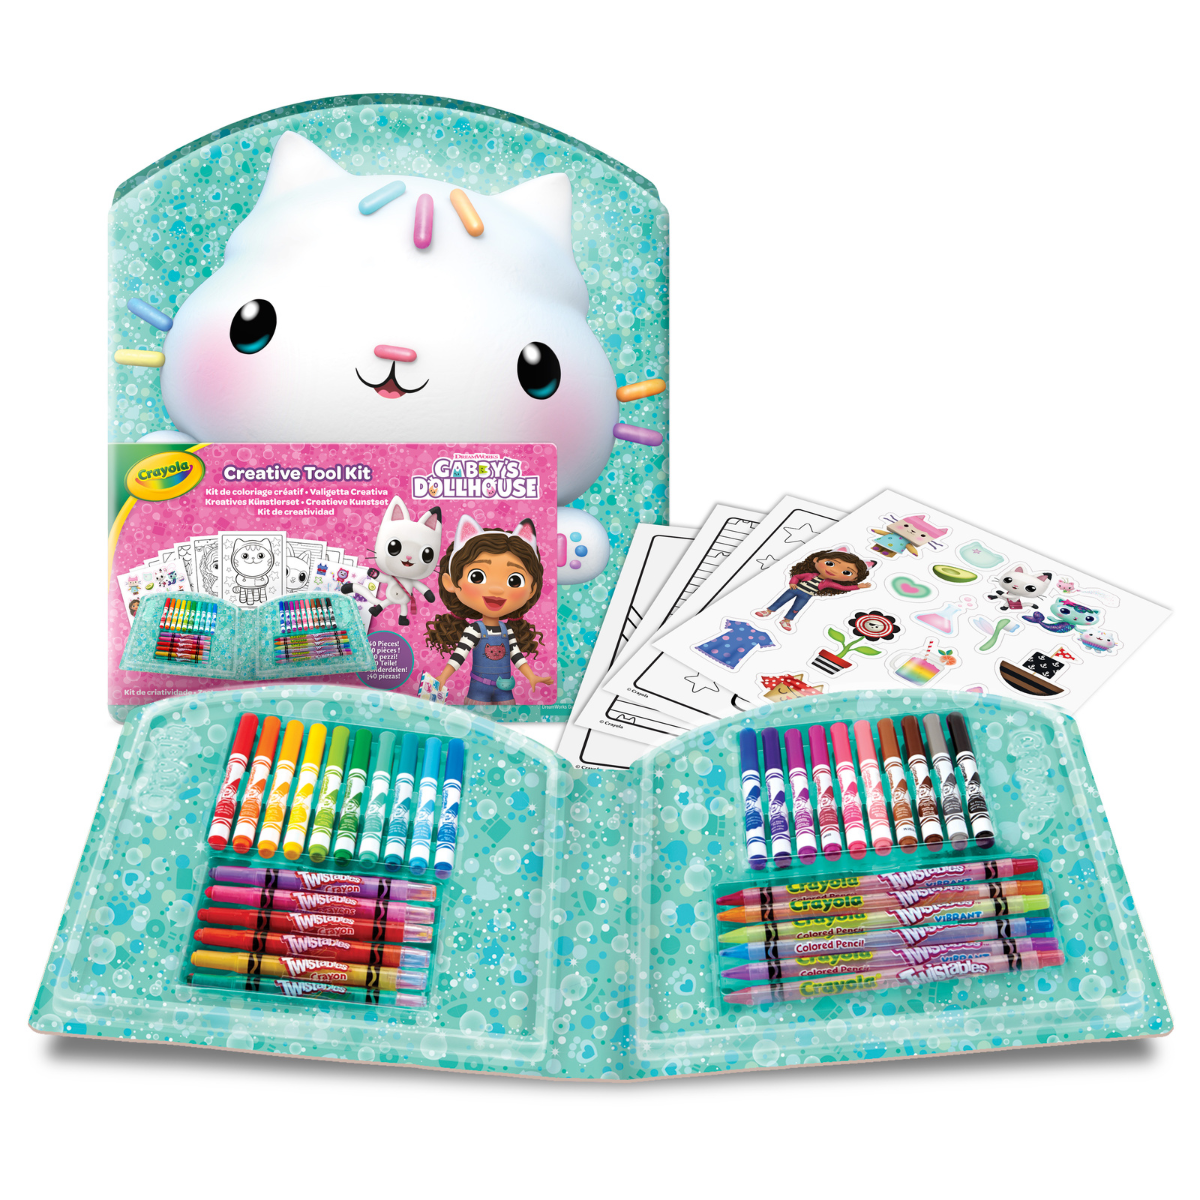 Crayola - valigetta creativa gabby’s dollhouse, 40 pezzi con pennarelli, pastelli a cera, pagine da colorare, adesivi, idea regalo e attività creativa per bambini da 5 anni - CRAYOLA